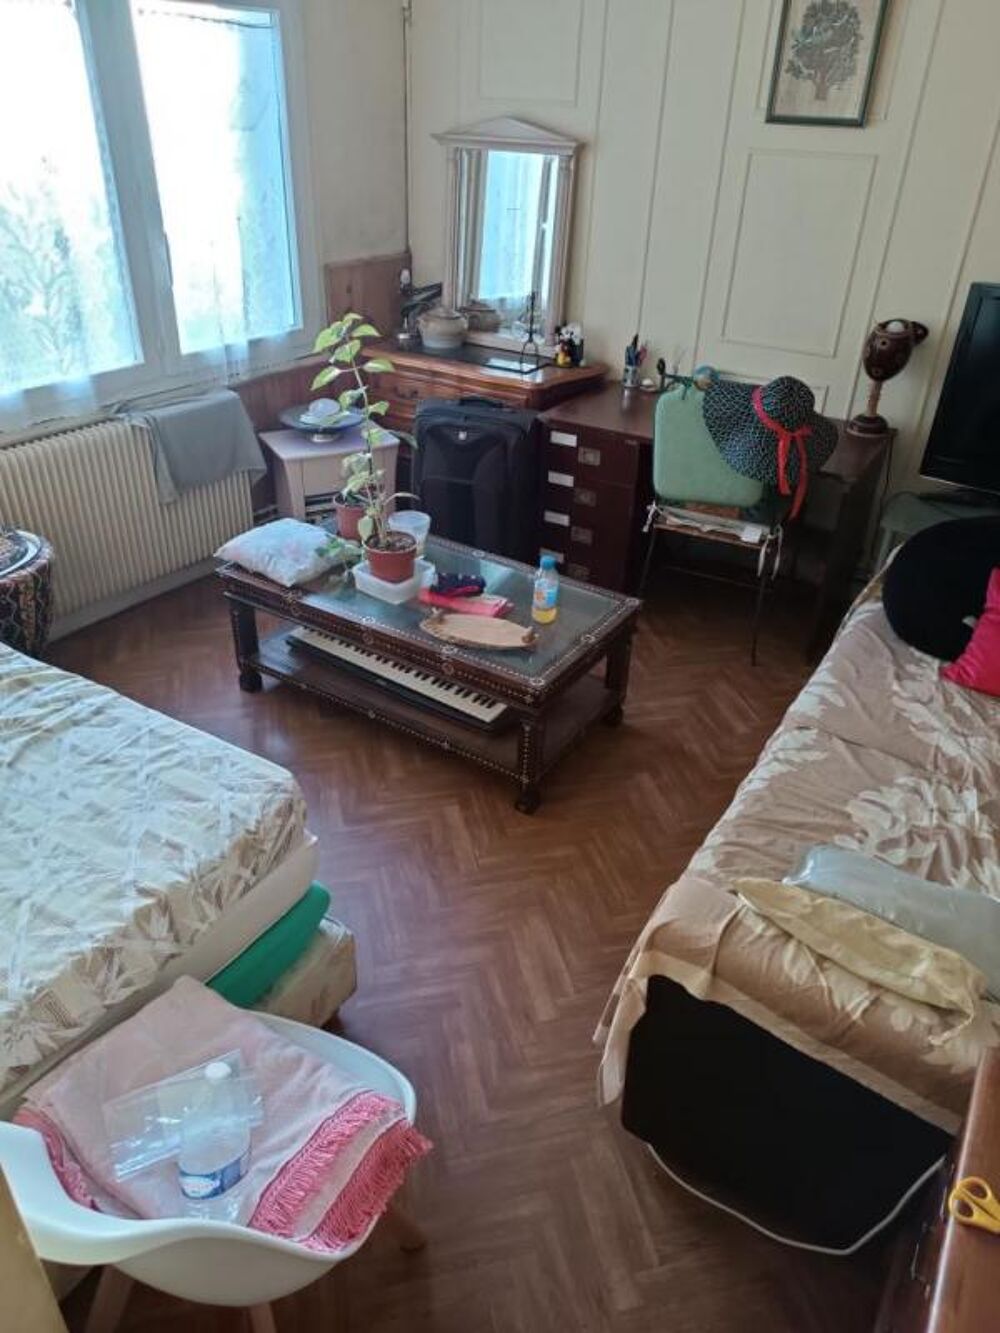 Location Appartement Chambre de 17m2  louer sur Le Kremlin Bicetre Le kremlin bicetre